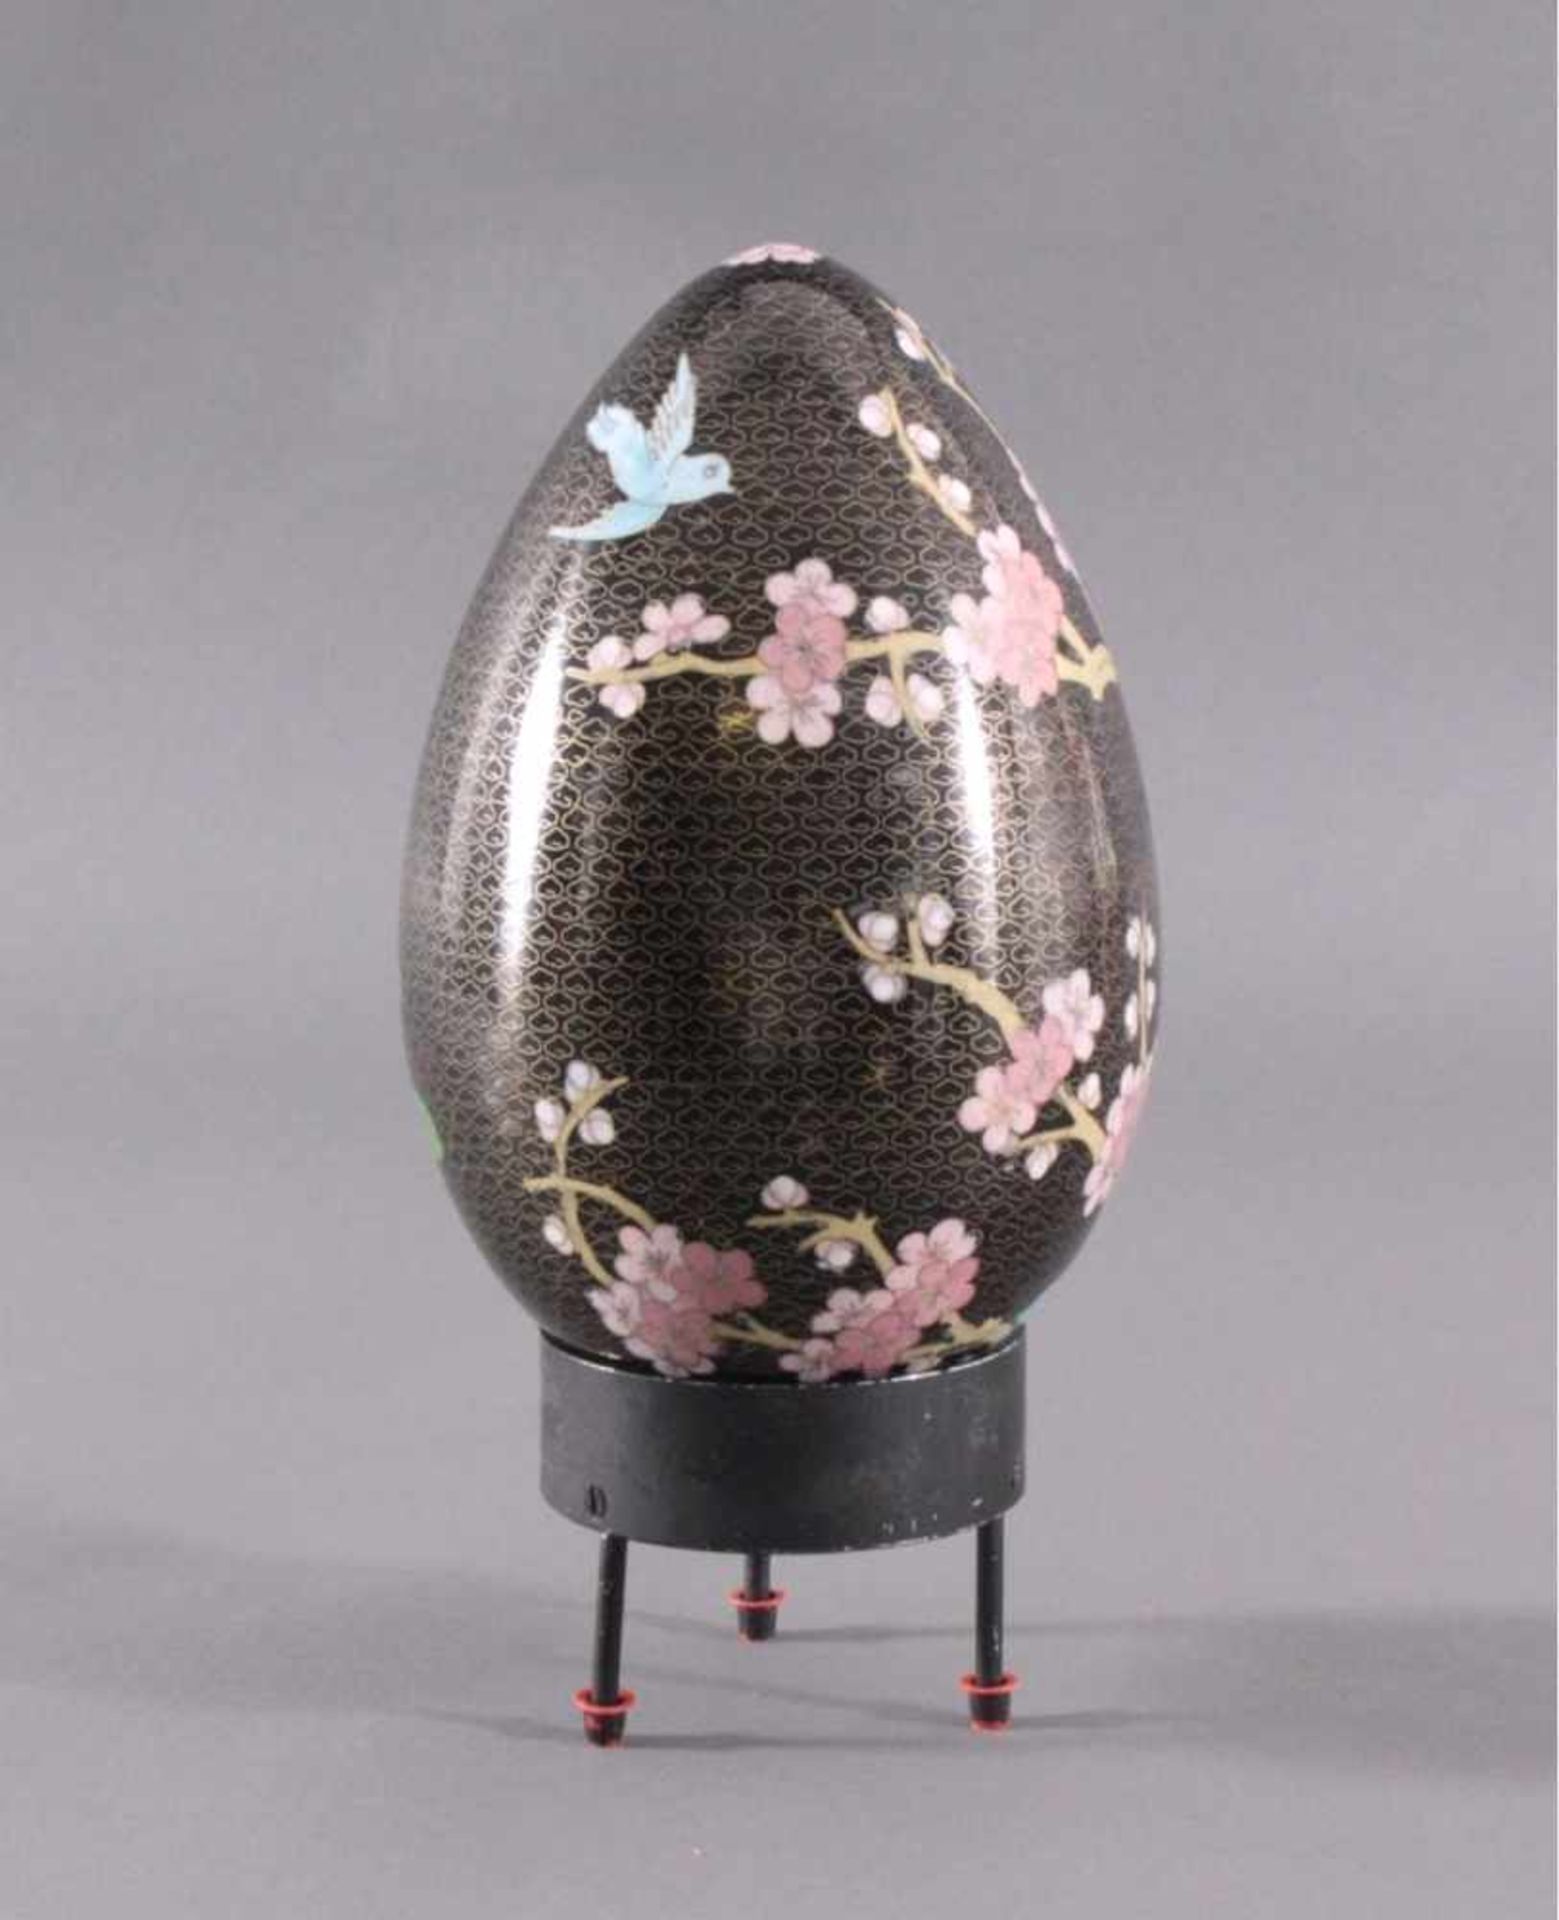 Großes Cloisonne Ei, China 1. Hälfte 20. Jh.Kupferkorpus, polychrom emailliert im Kirschblütendekor, - Bild 3 aus 5